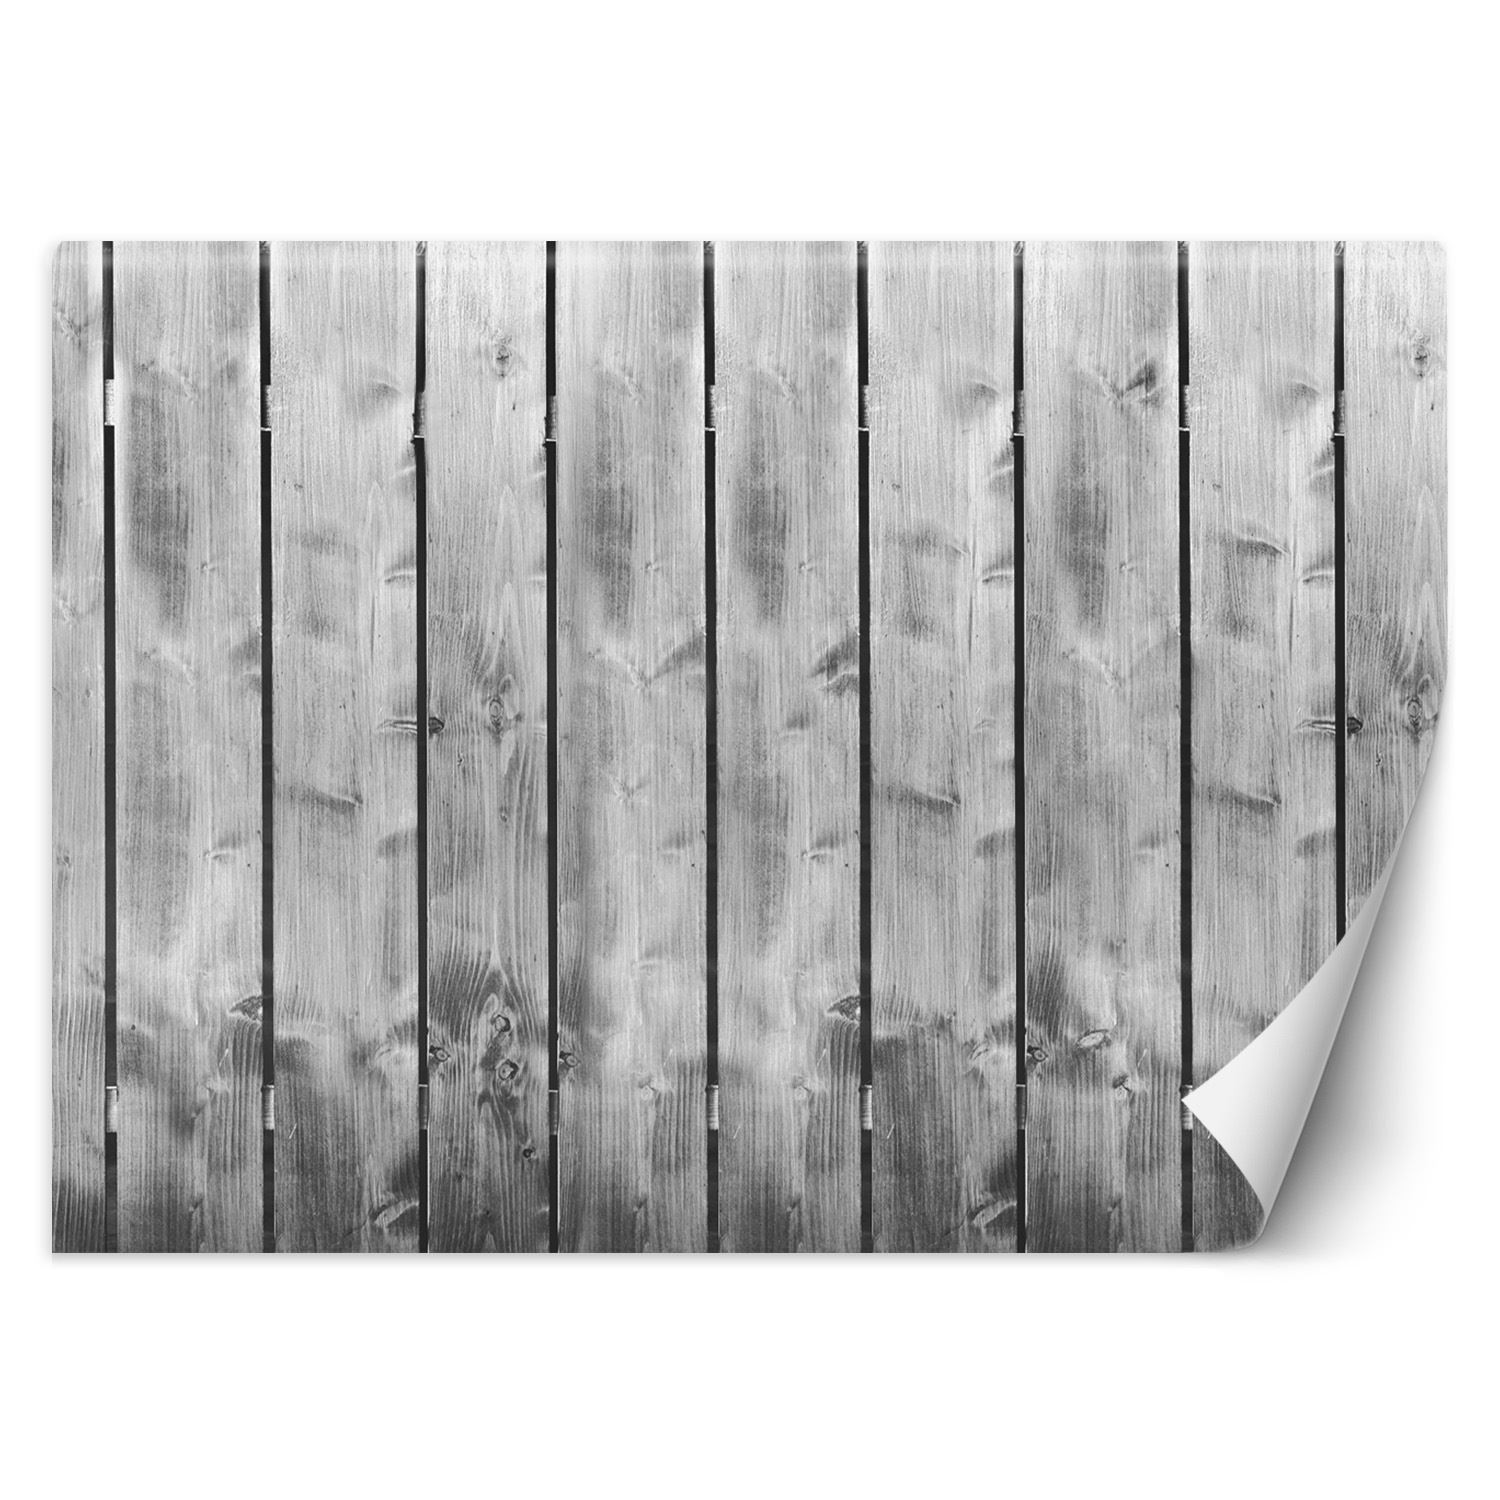 Trend24 – Behang – Plankpatroon – Behangpapier – Behang Woonkamer – Fotobehang – 200x140x2 cm – Incl. behanglijm